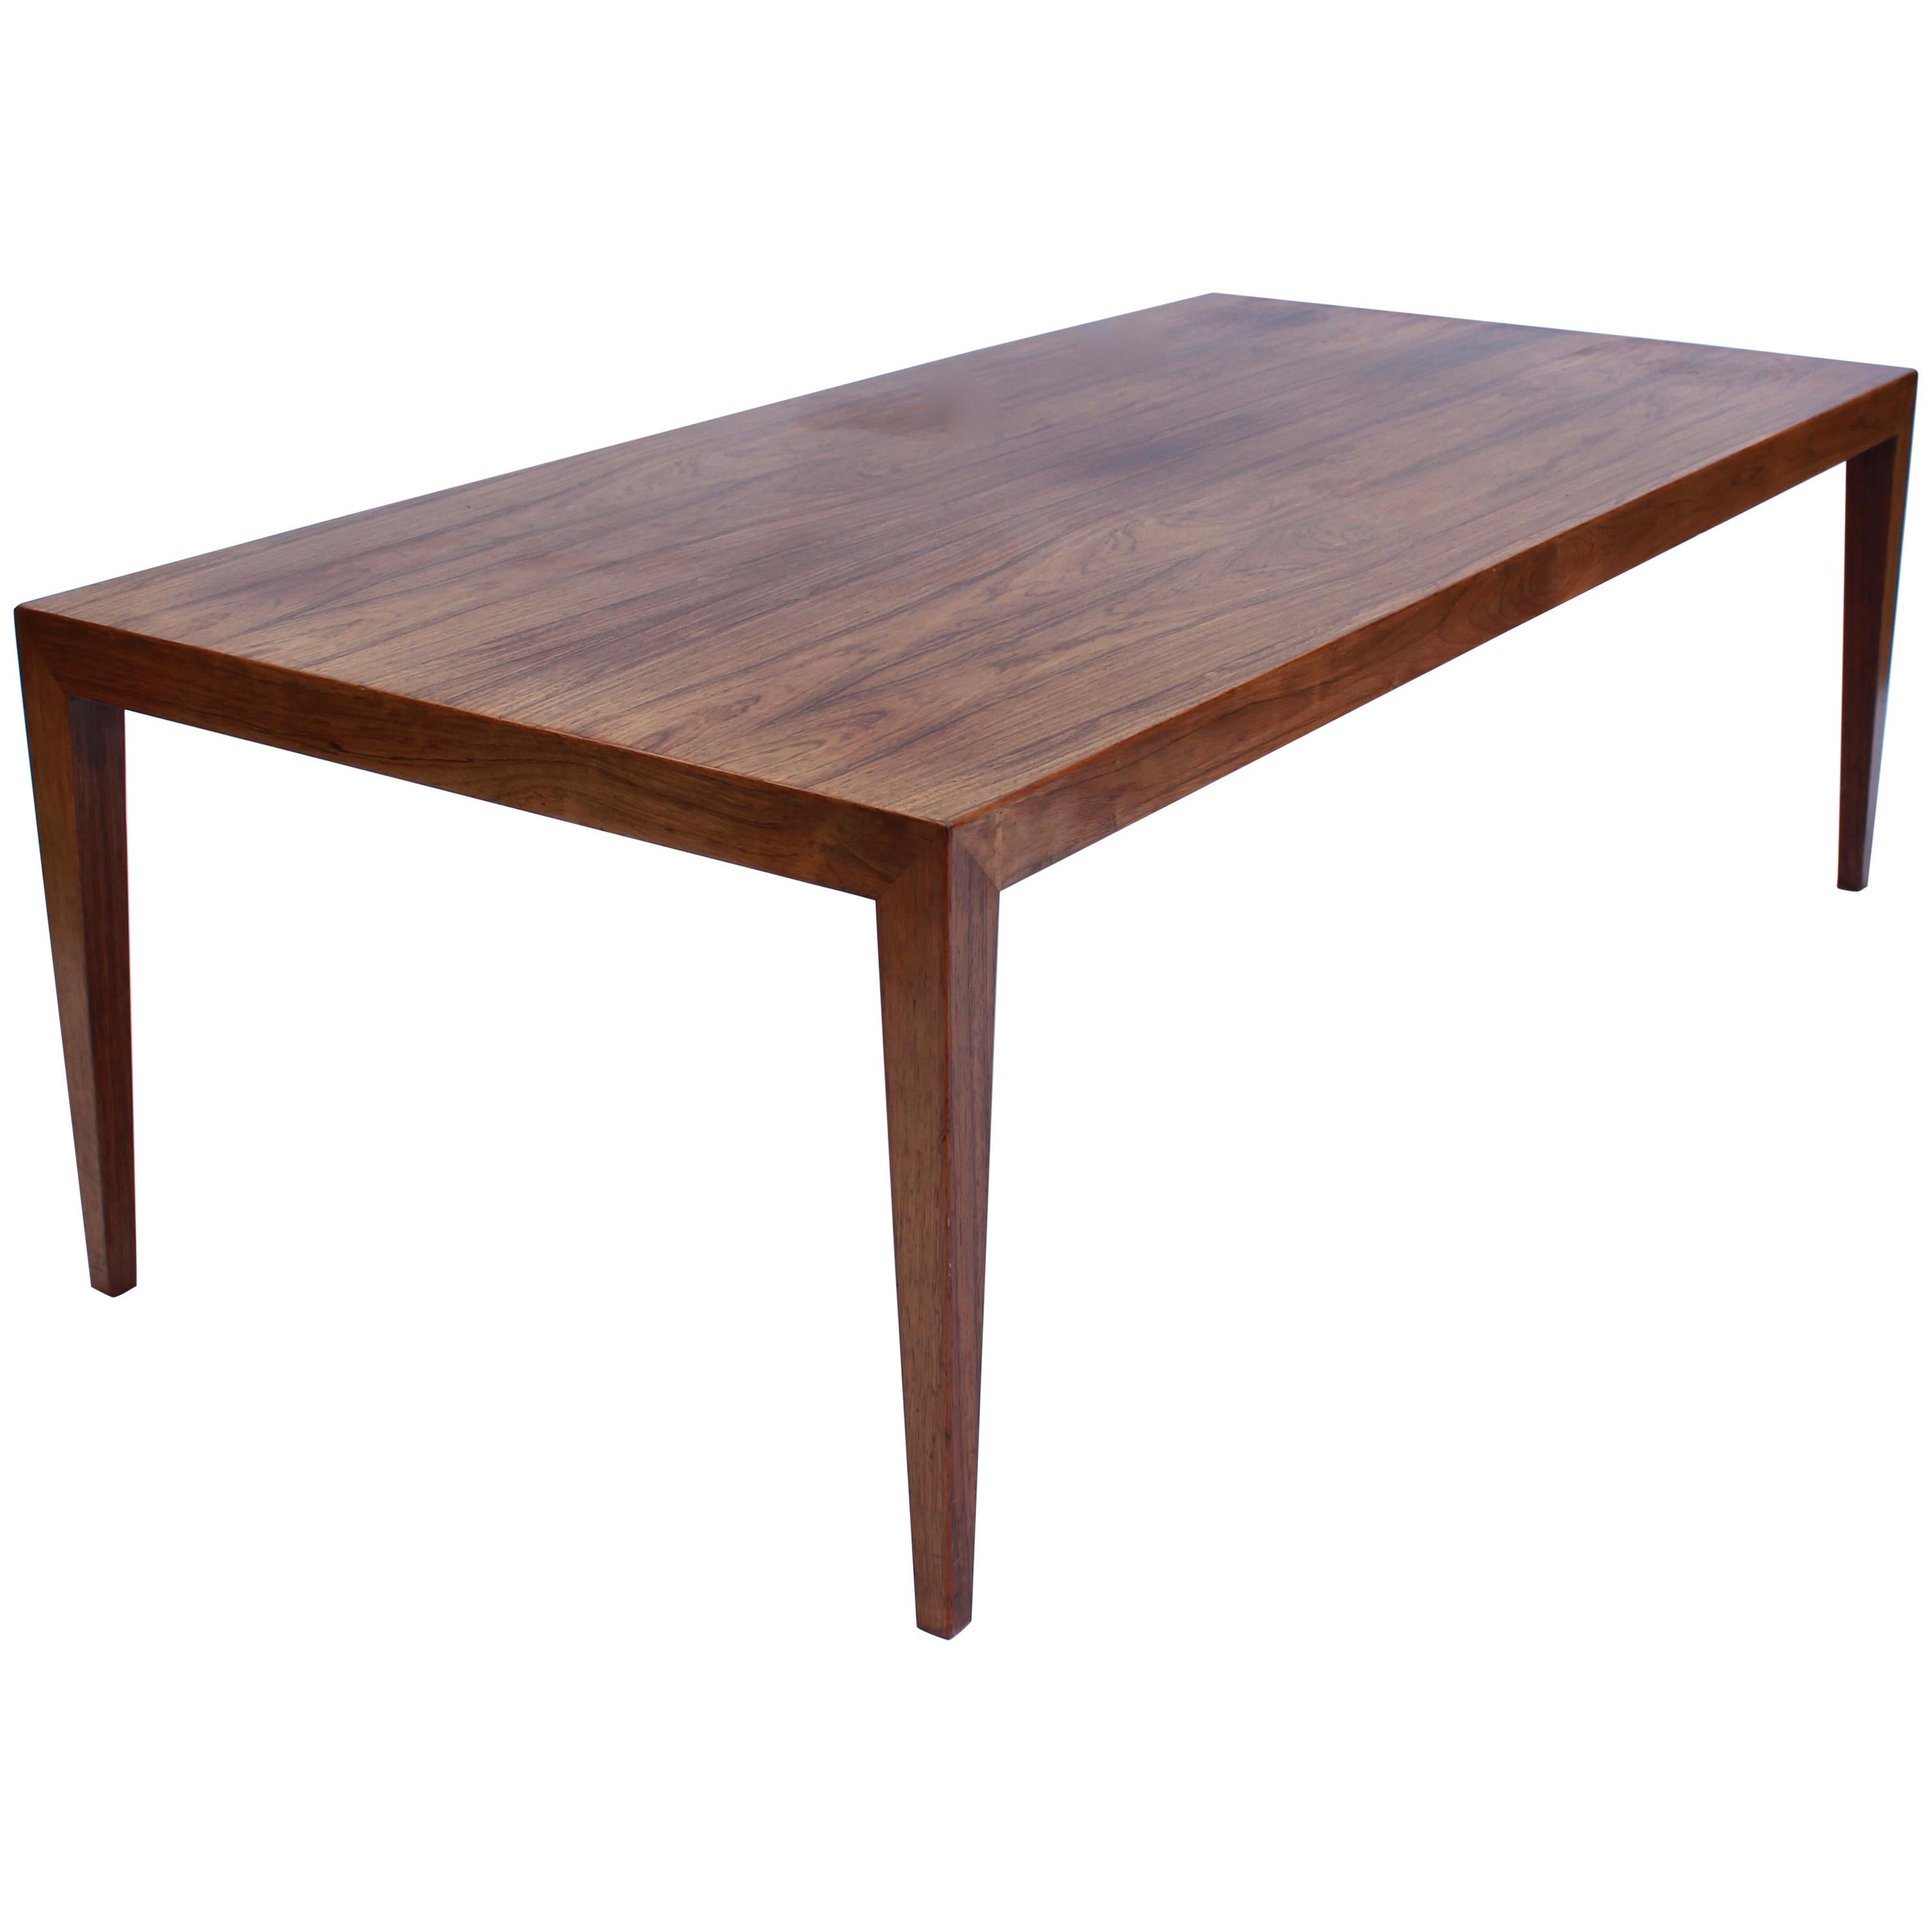 La table basse en bois de rose, conçue par Severin Hansen et produite par Haslev Møbelfabrik dans les années 1960, représente un chapitre emblématique de l'histoire du design mobilier danois.

Severin Hansen, l'un des principaux designers de meubles